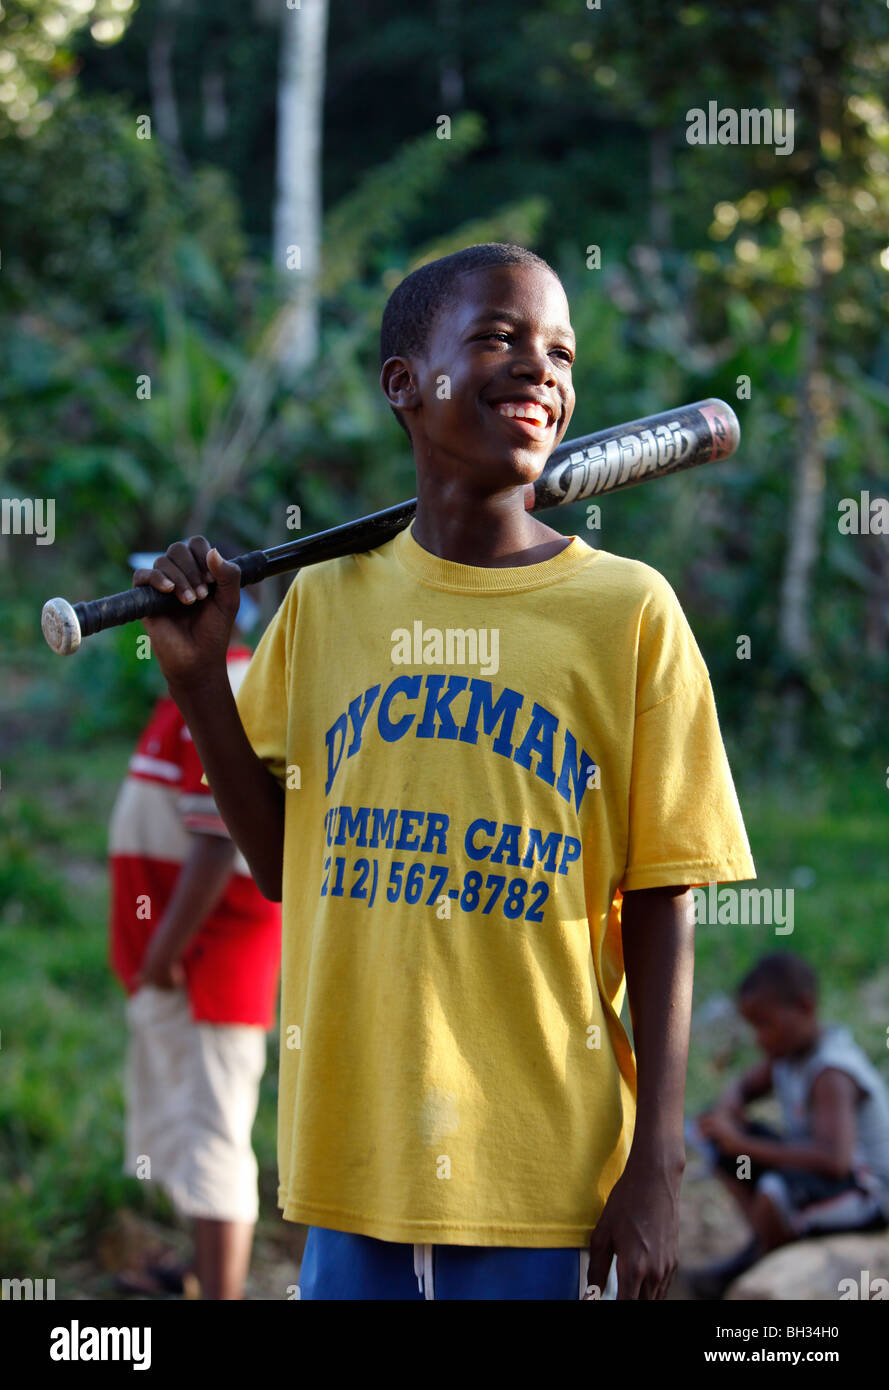 Boys, informal baseball game, Dominican Republic Stock Photo